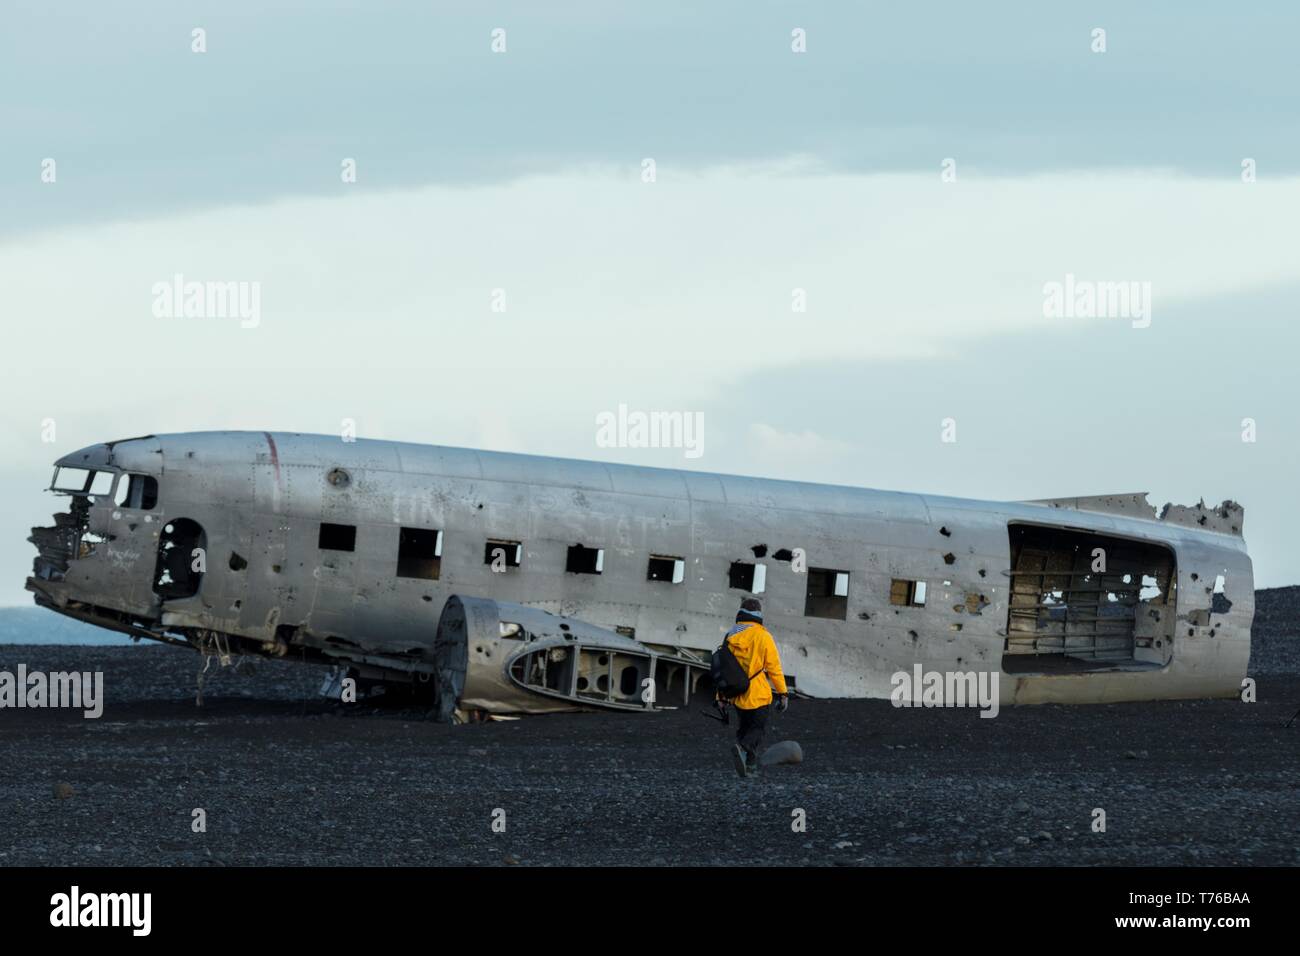 Eine Person in einem gelben Regenmantel, die sich einem alten näherte, stürzte ab Flugzeug in einem Feld Stockfoto